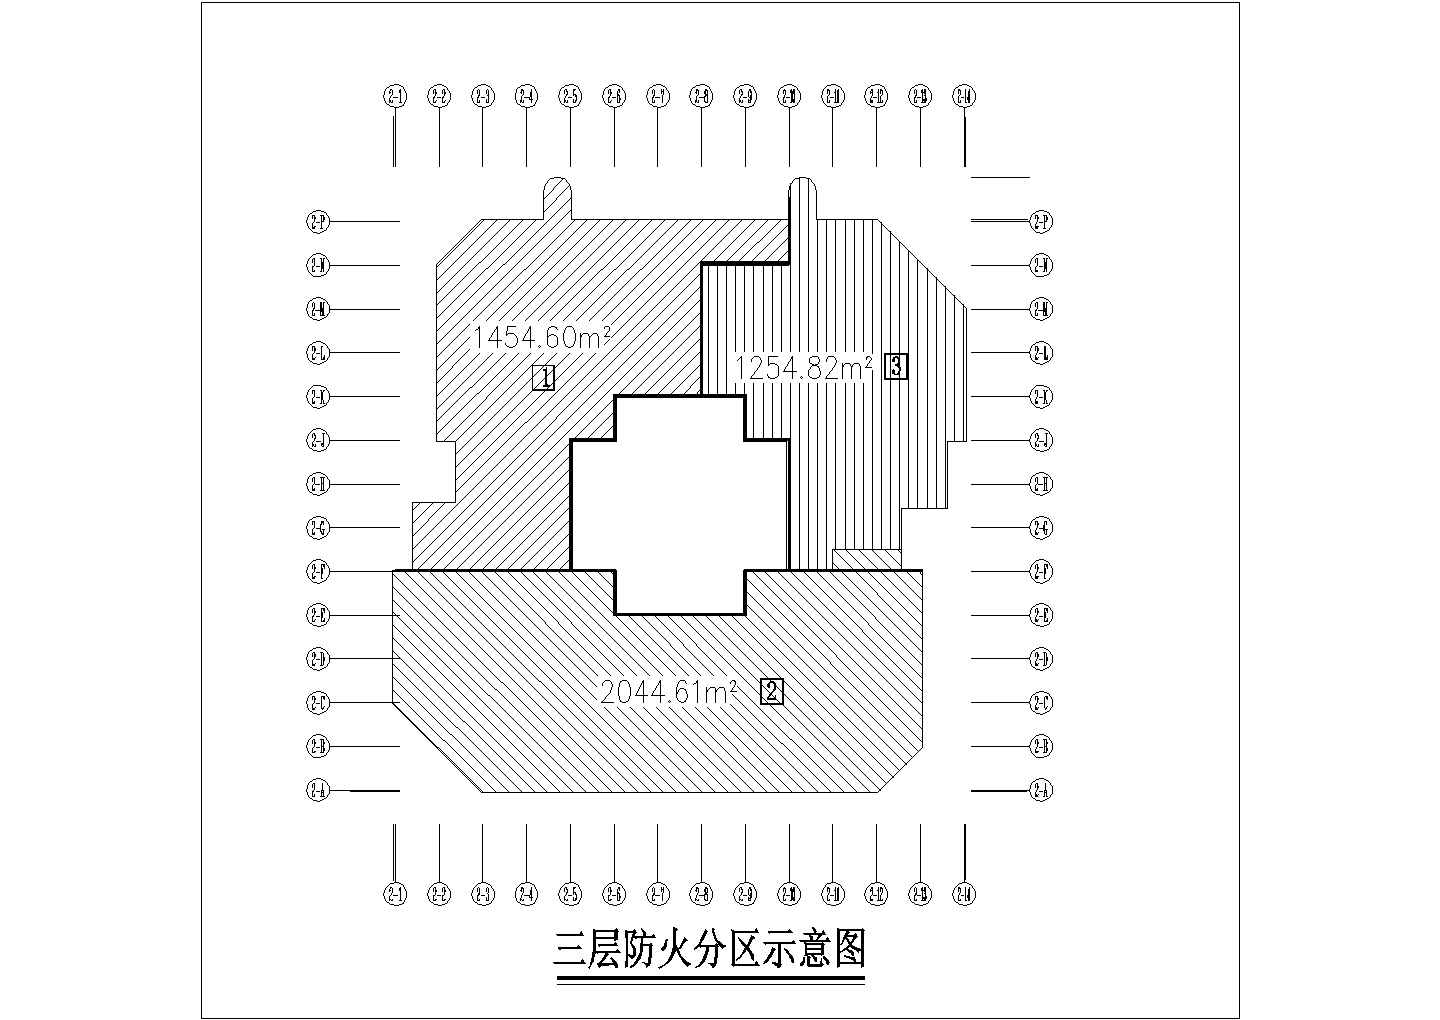 陕西省某地区三层局部墙体定位图(一)